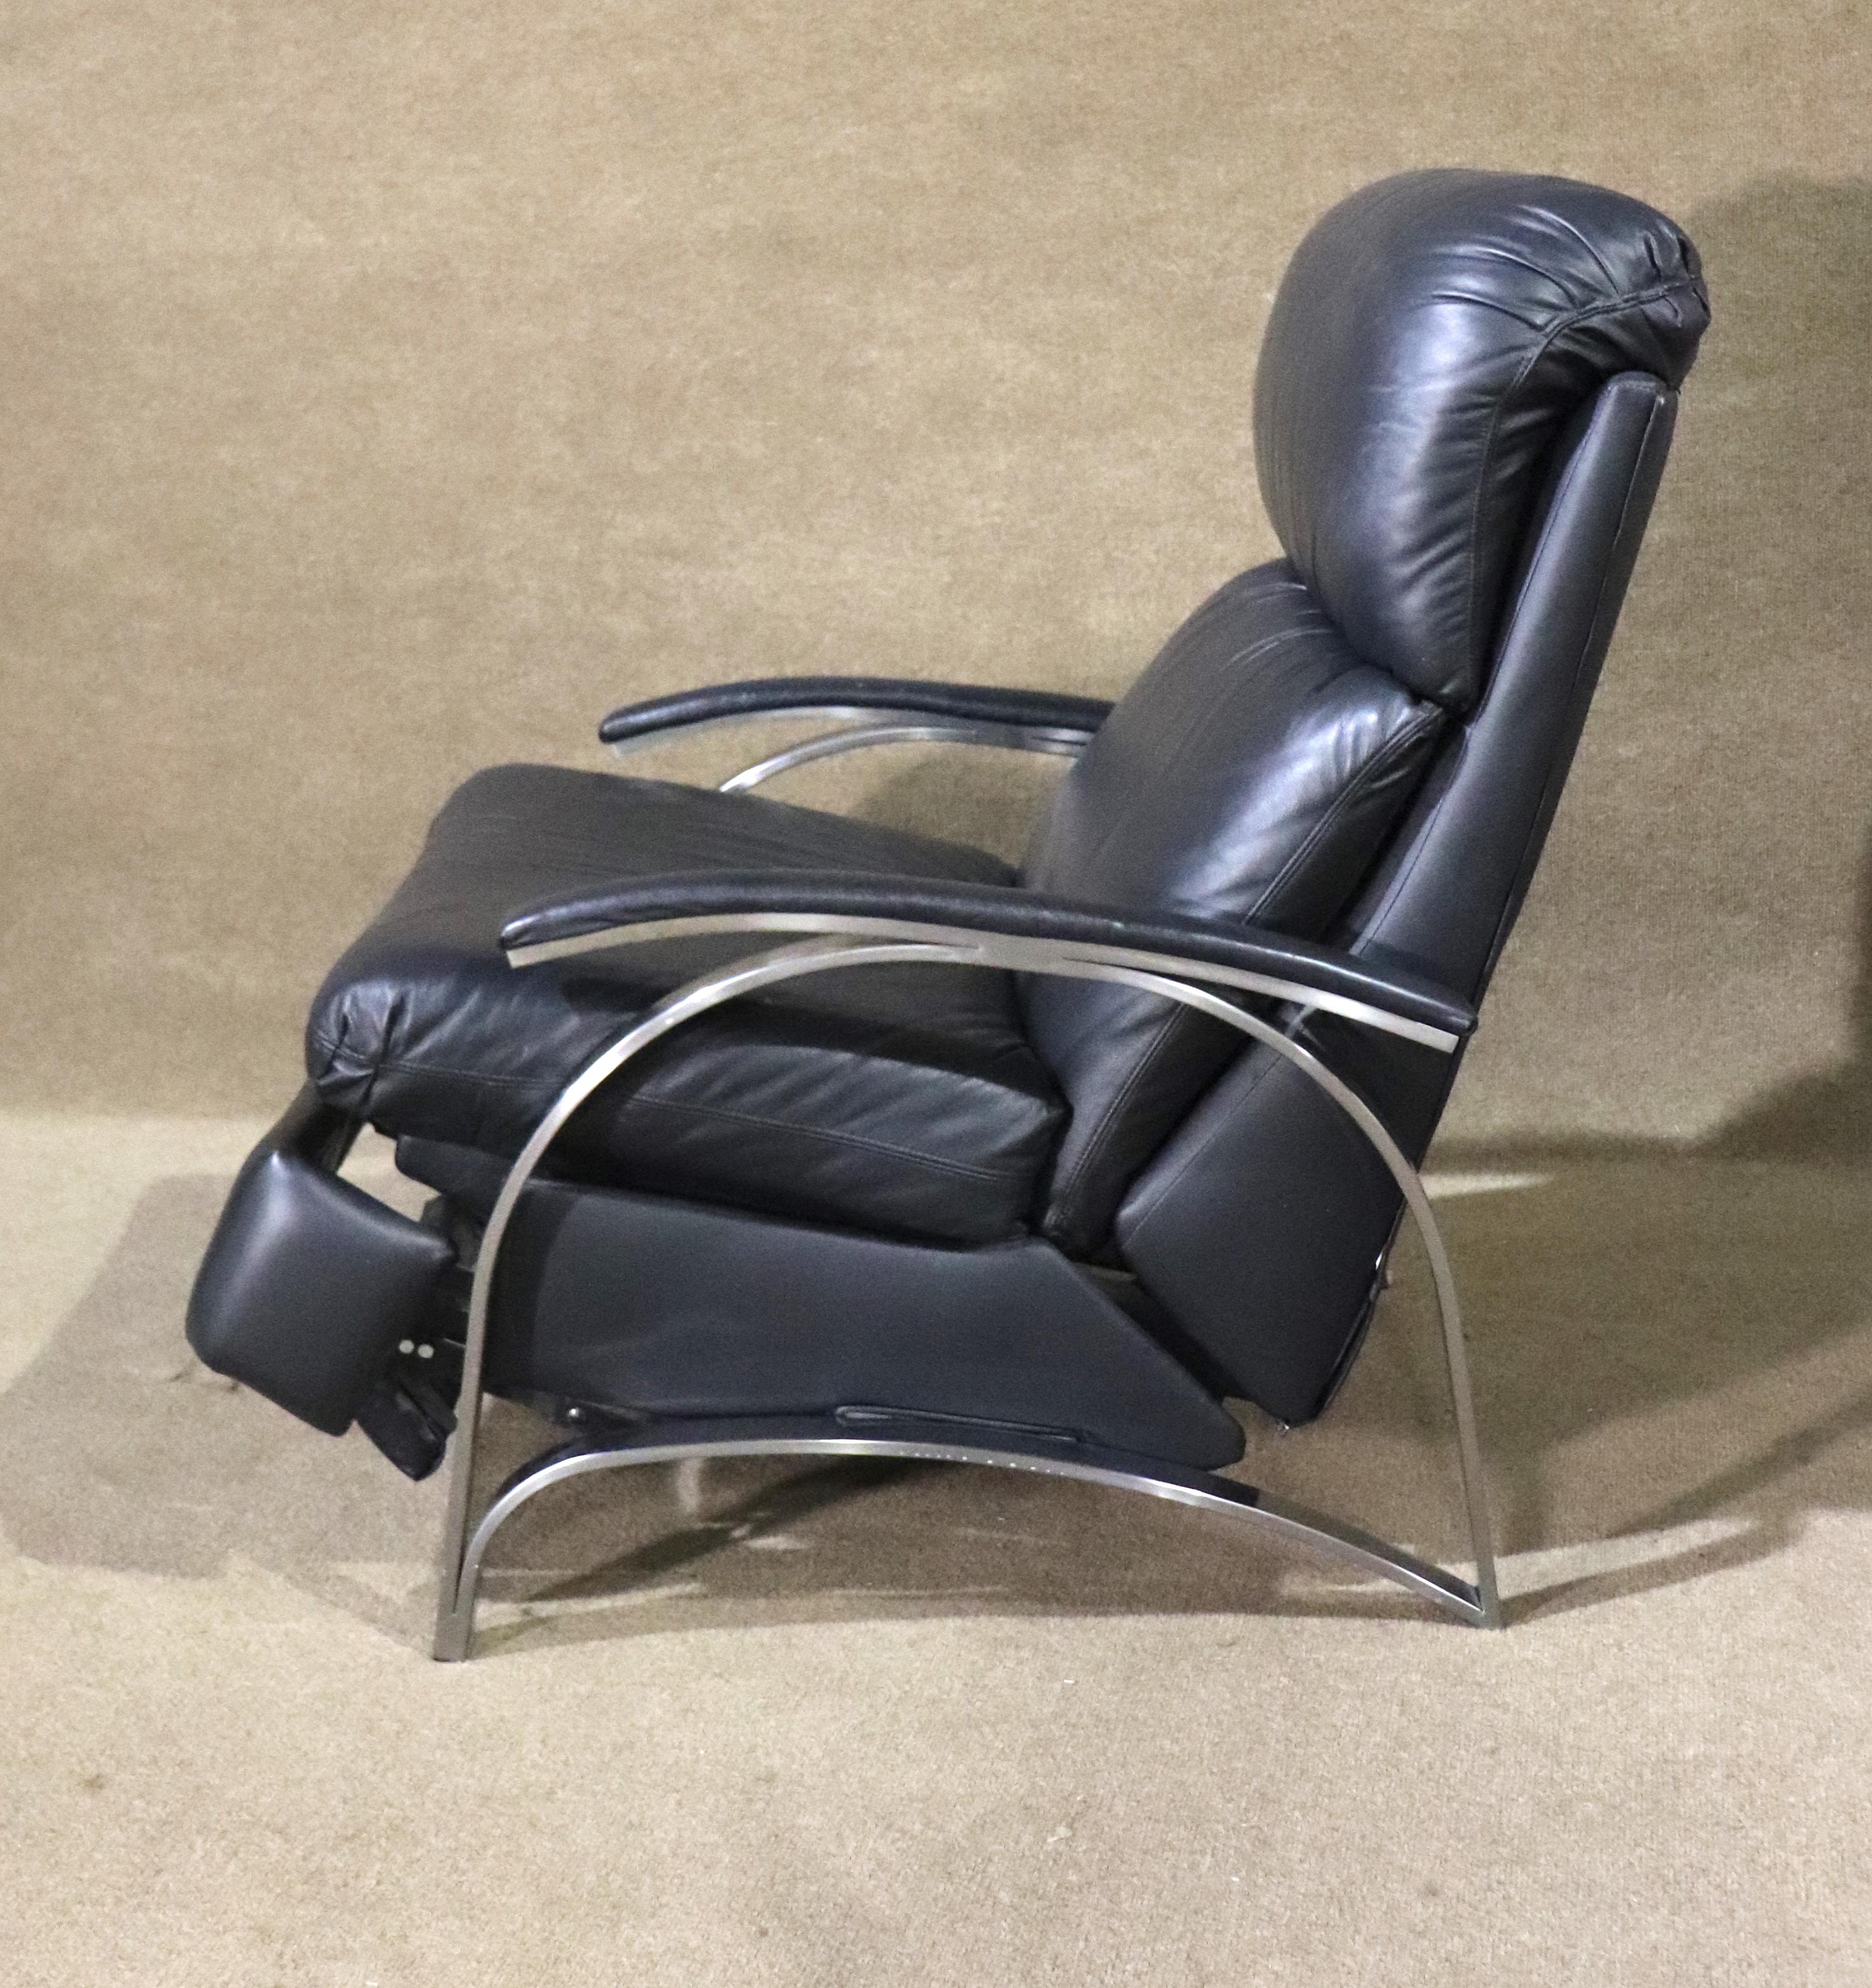 Chaise longue confortable en cuir inclinable de Barcalounger. Structure en chrome poli dans un style moderne du milieu du siècle, avec un fauteuil en cuir souple entièrement inclinable.
Veuillez confirmer le lieu NY ou NJ